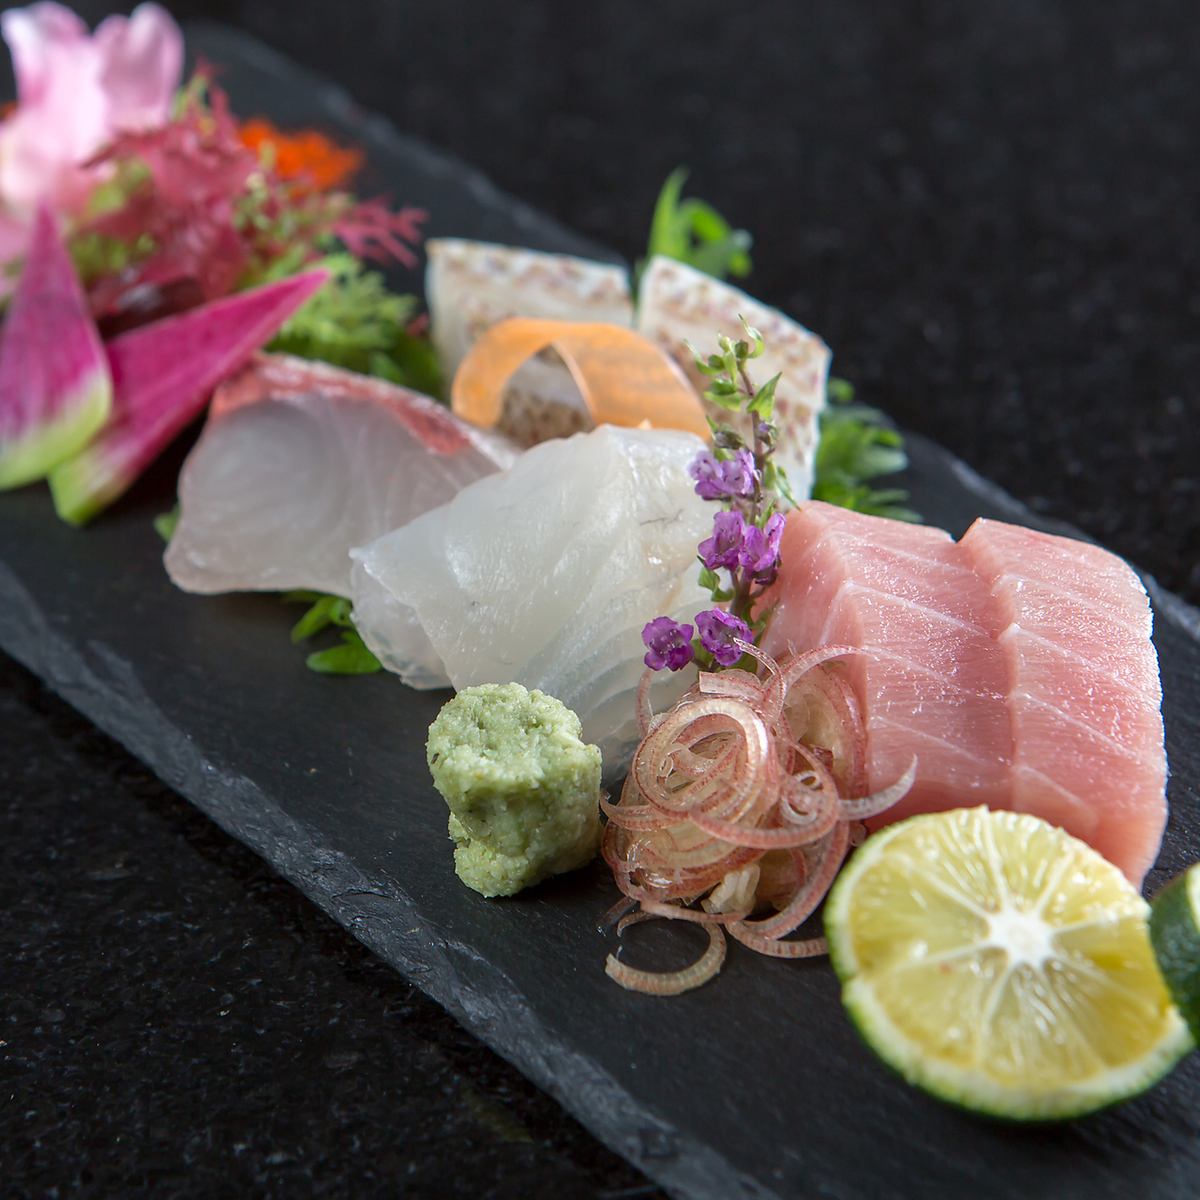 招牌菜是用鲜鱼制成的生鱼片和砂锅太饭！还有最适合搭配的清酒！